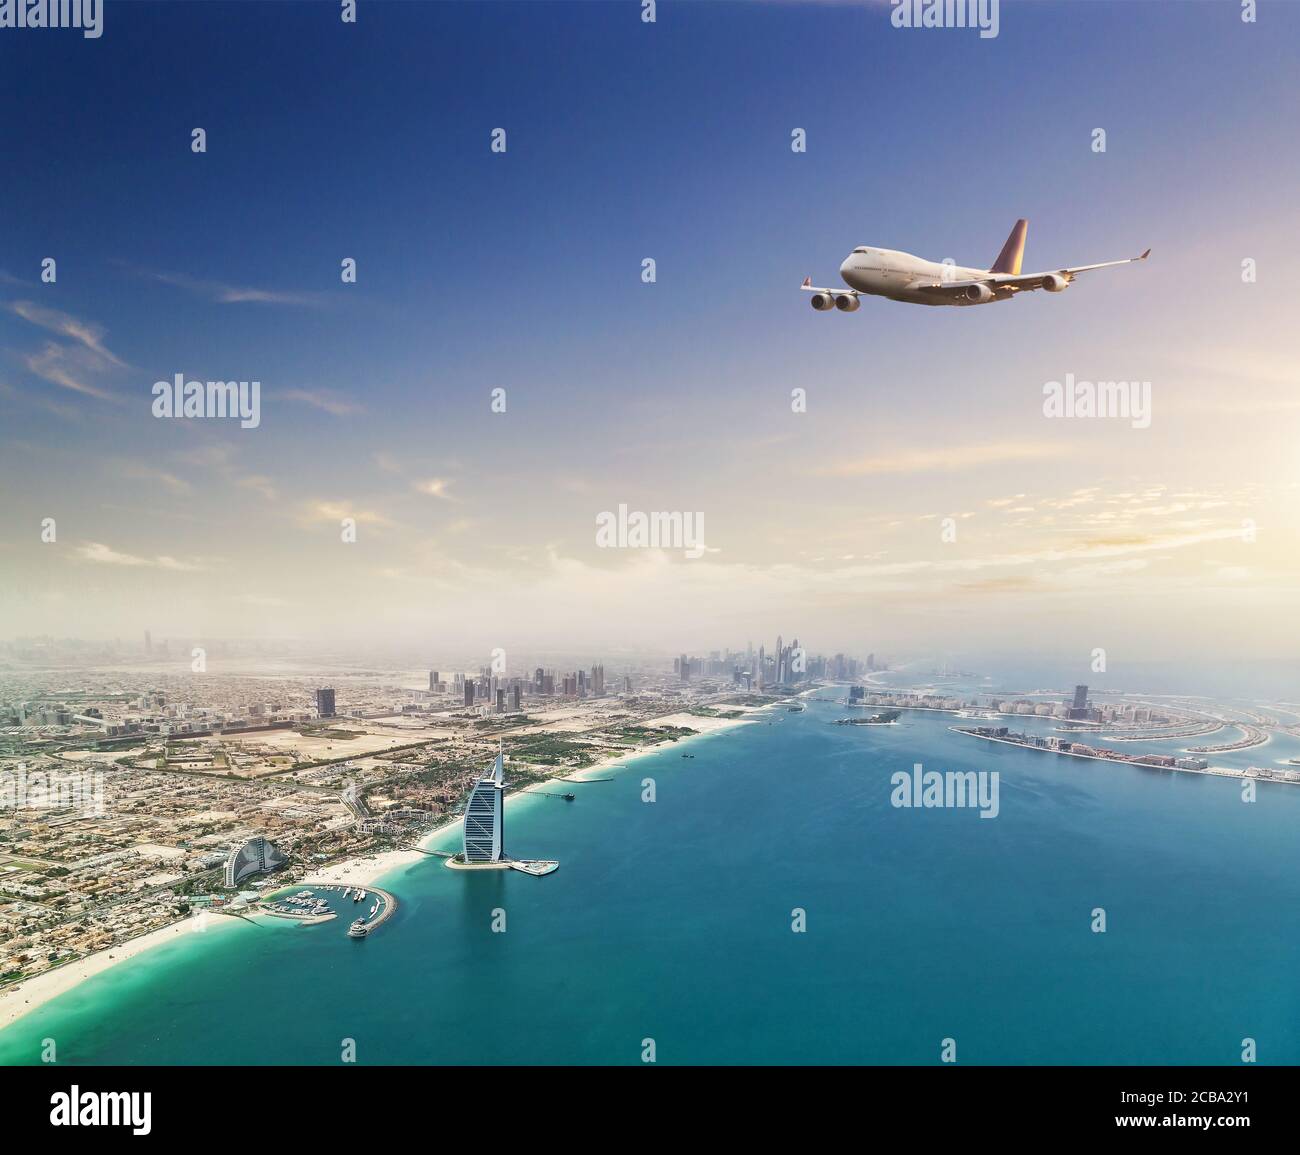 Avion commercial survolant la ville de Dubaï. Mode de transport moderne et le plus rapide, vie professionnelle. Image très haute résolution Banque D'Images